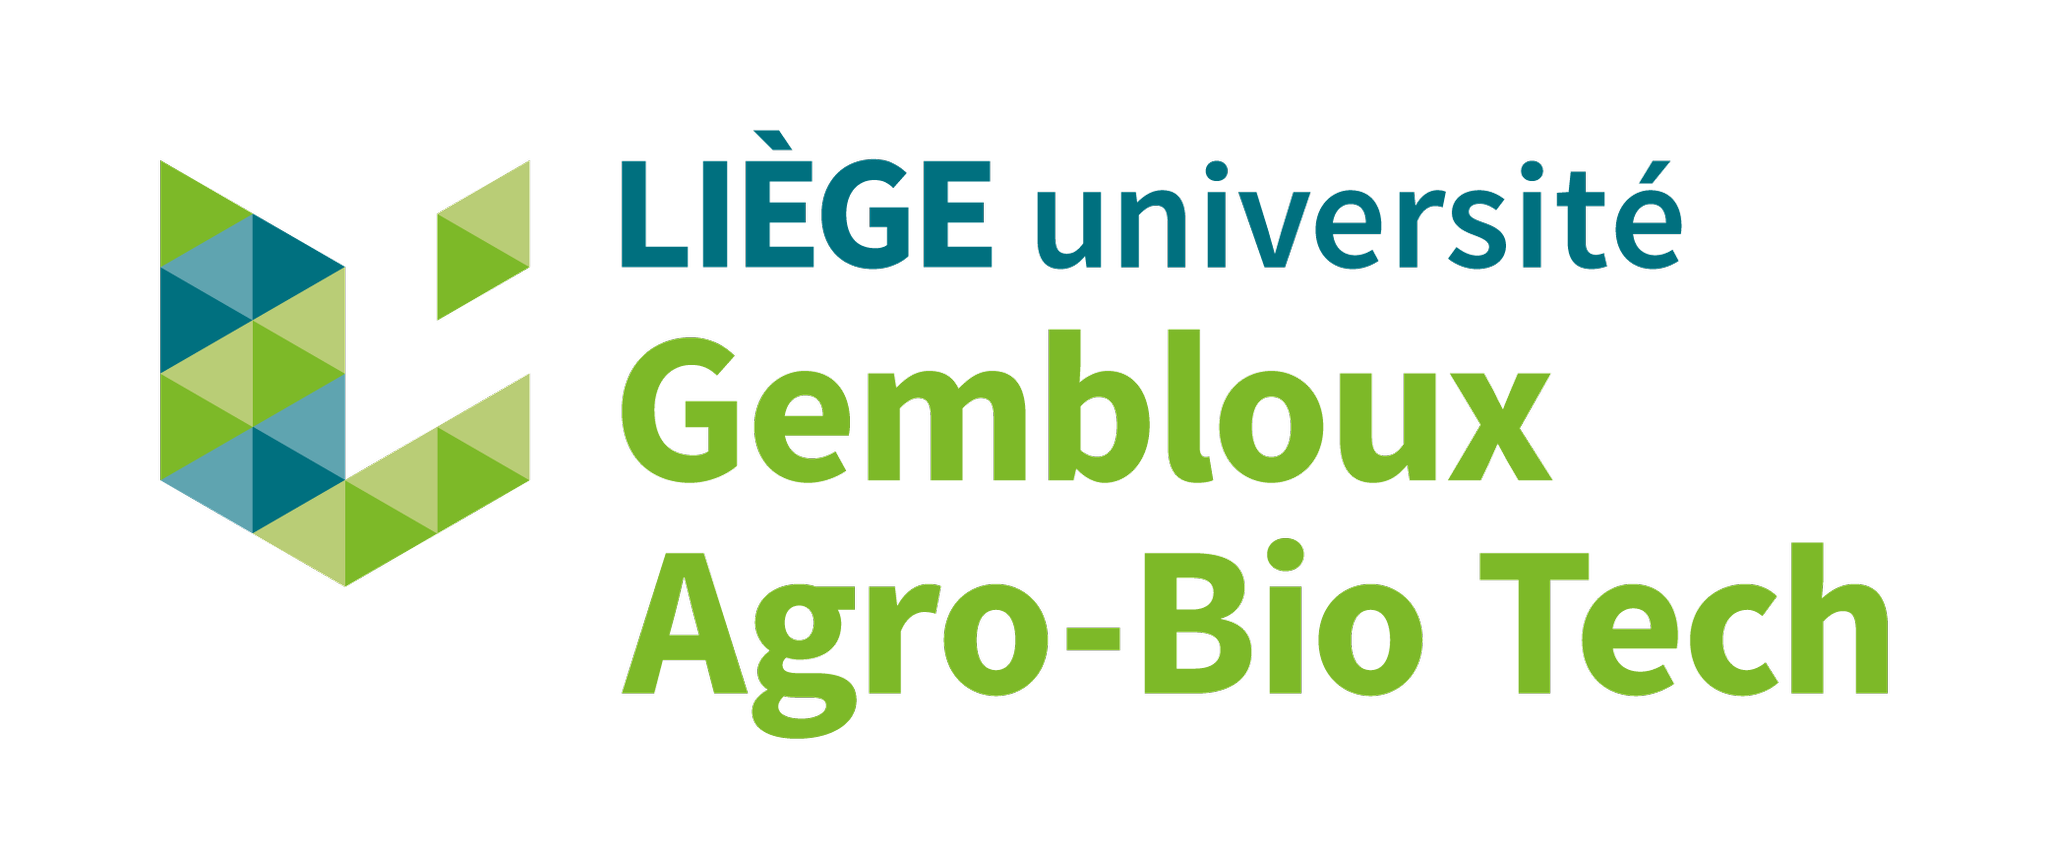 Université de Liège (GxABT)